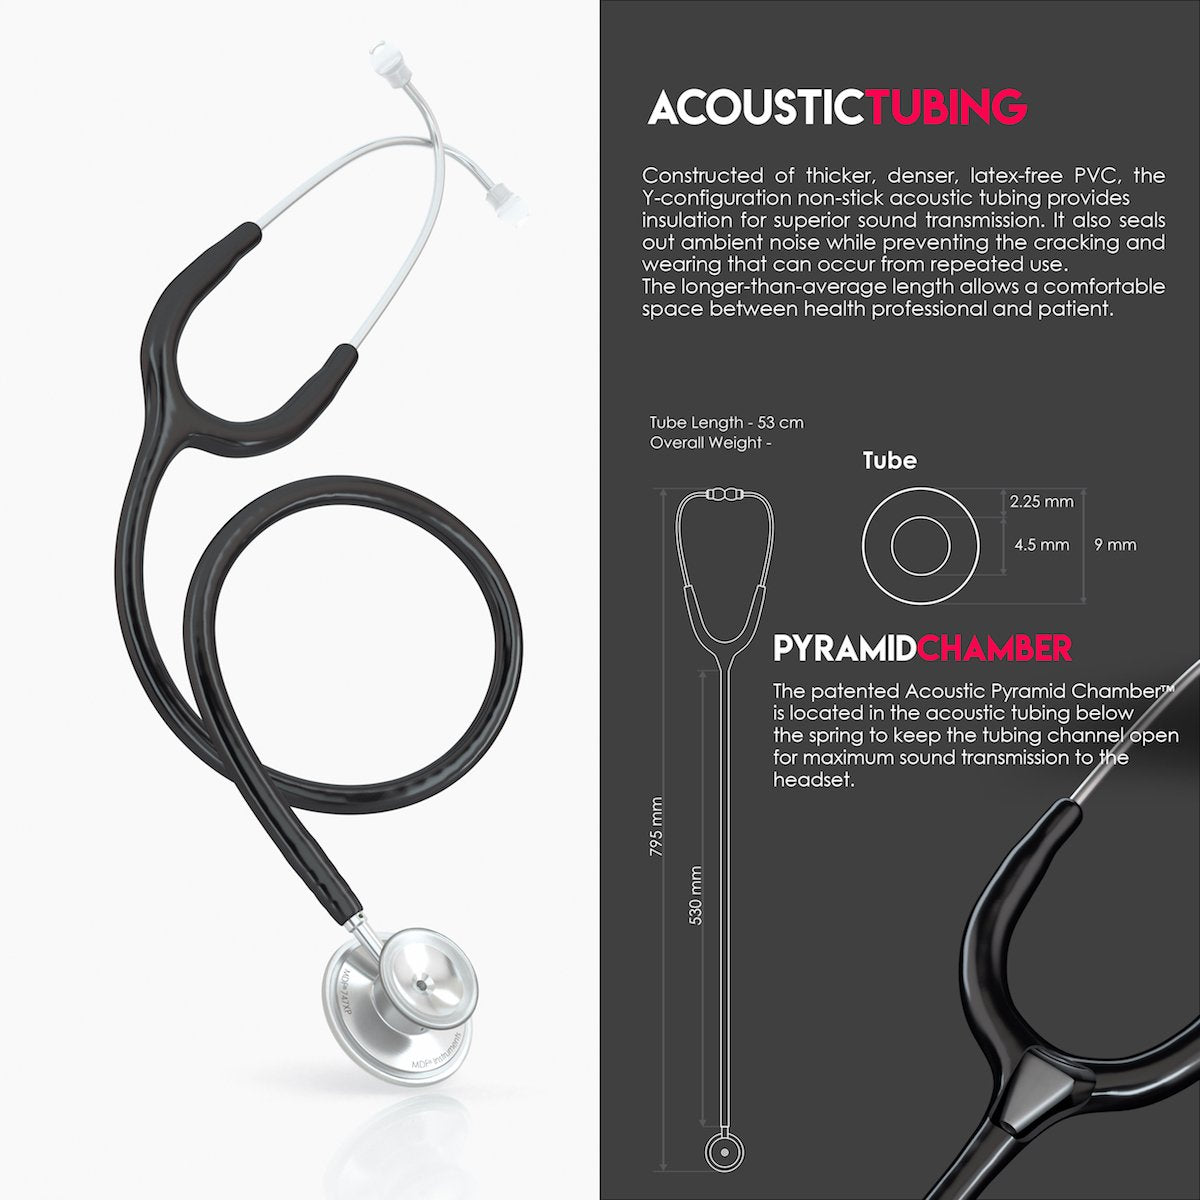 mfa acoustica stethoscope reviews